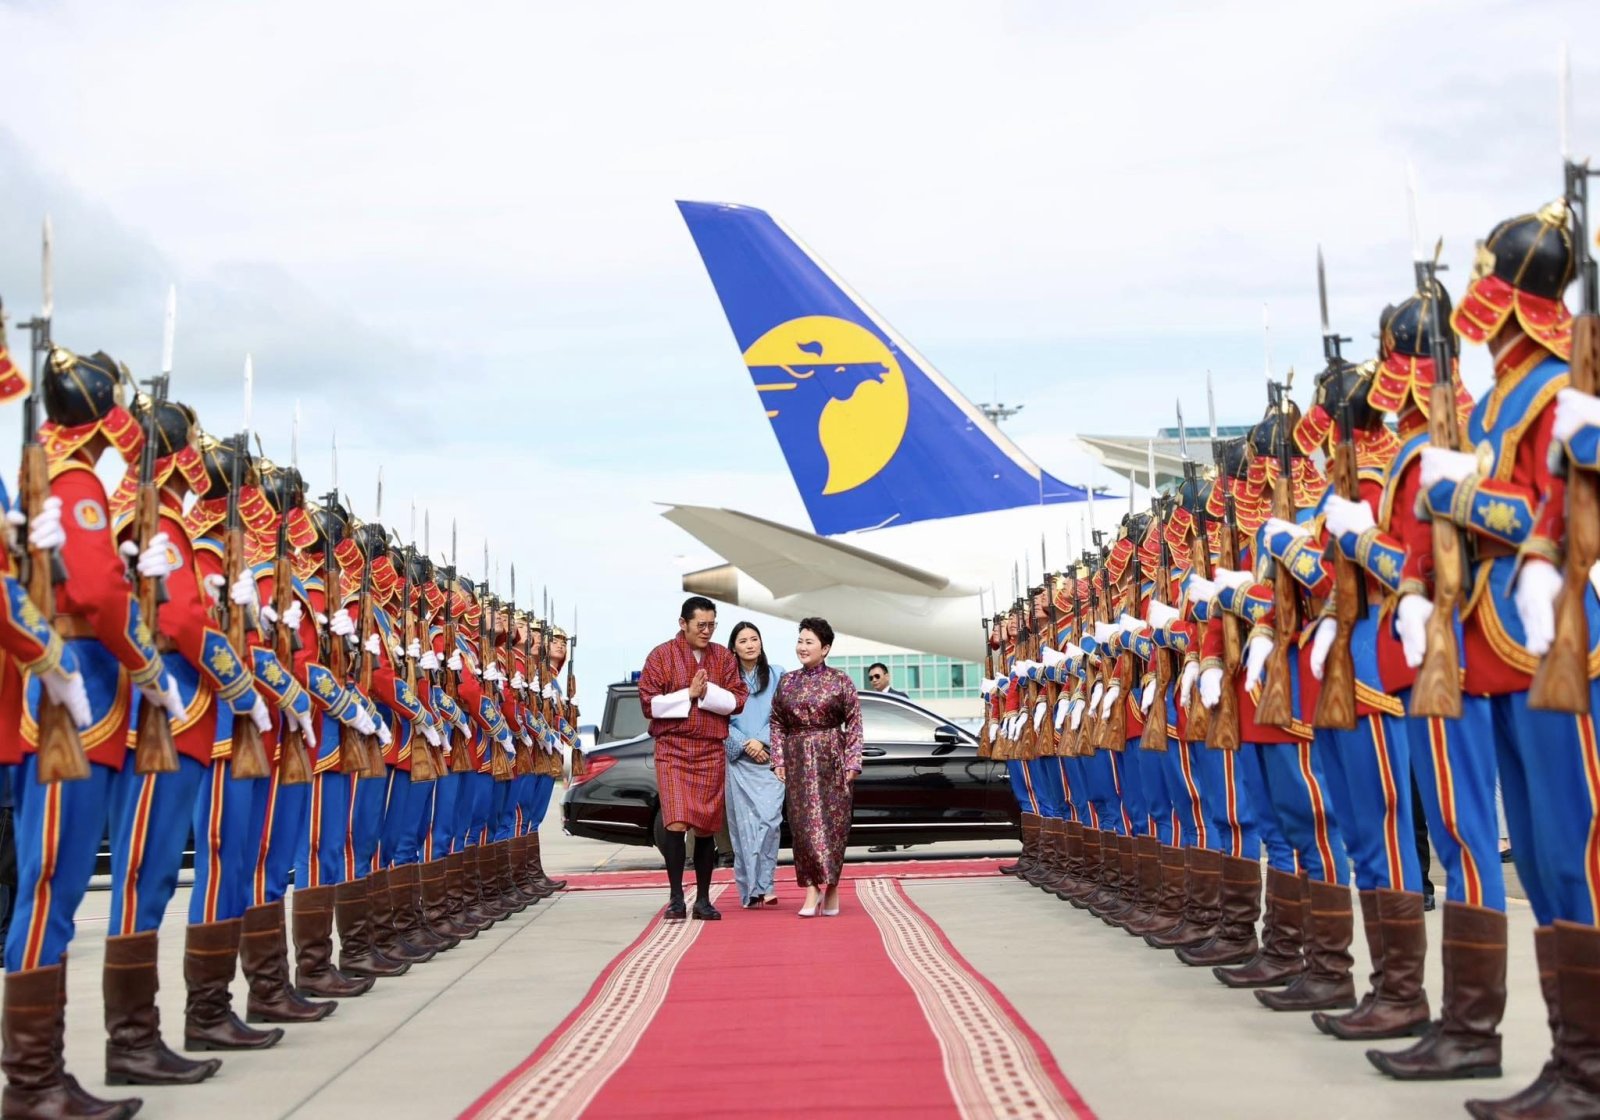 Бутаны Хаант Улсын Цог Жавхлант Хаан Жигмэ Гэсэр Намжил Ванчукийн анхны Төрийн айлчлал өндөрлөлөө